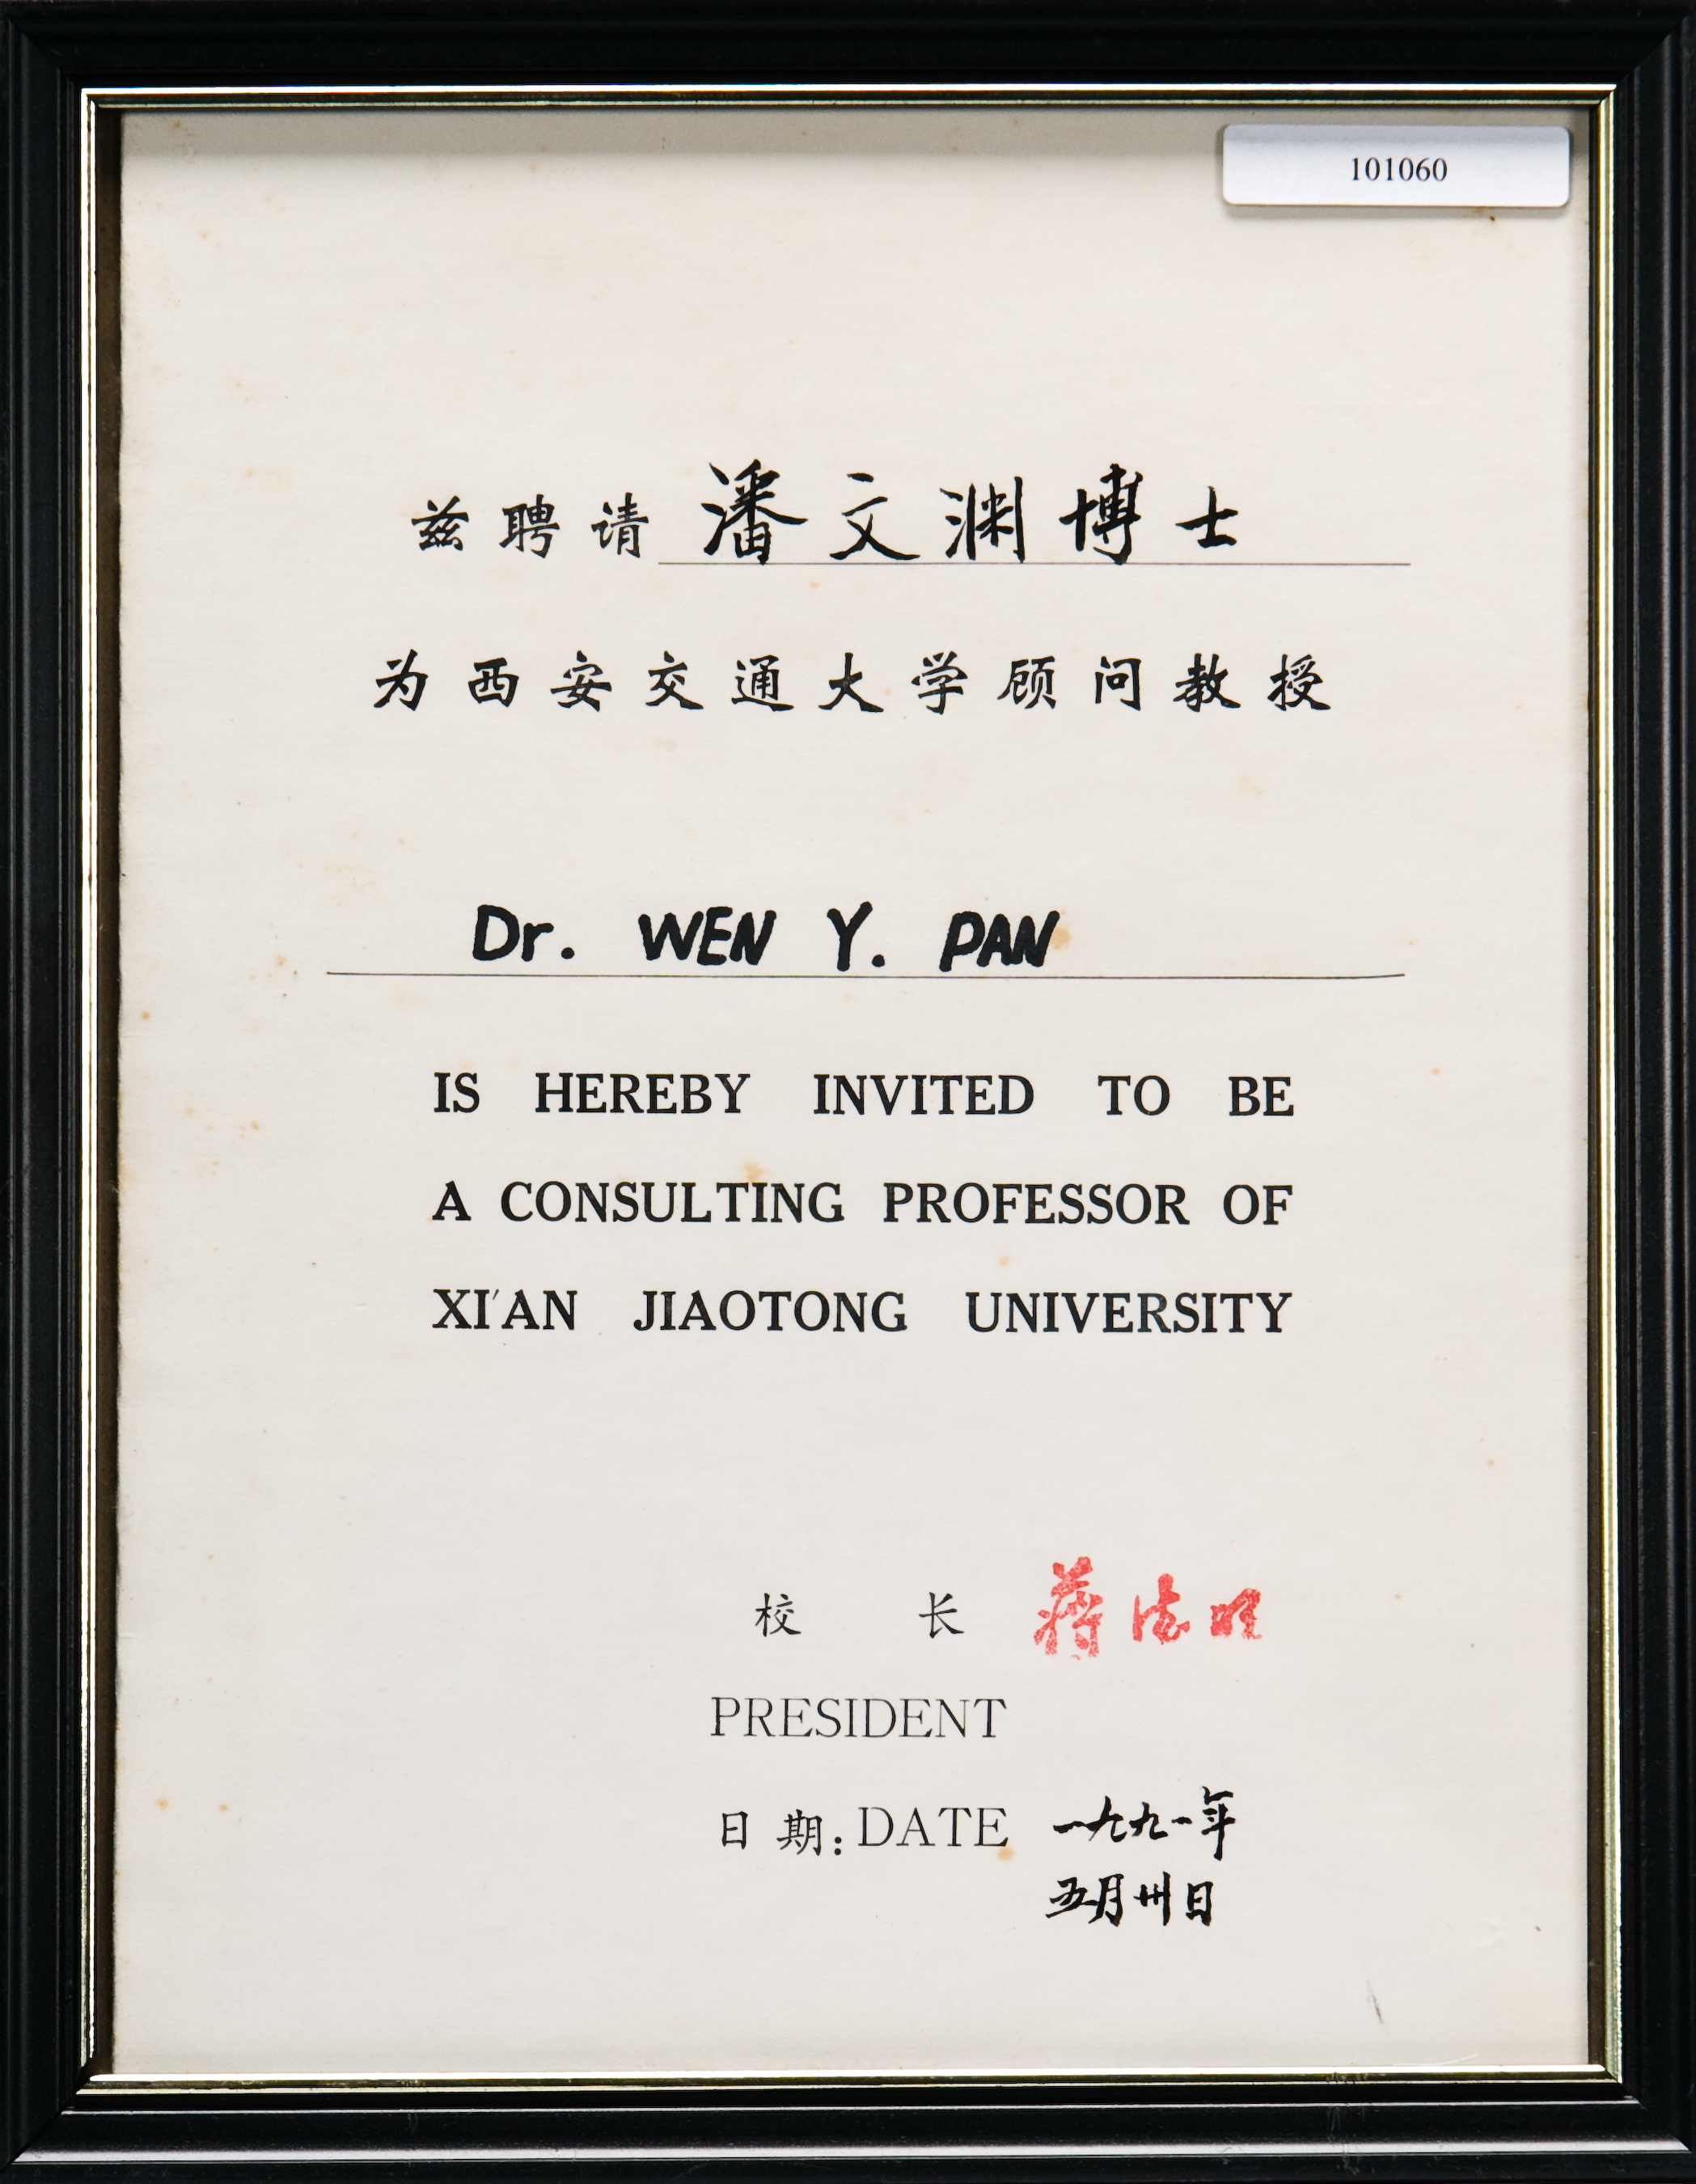 Pan Wen-Yuan received an offer as a consultant professor in  Xian Jiaotong University.